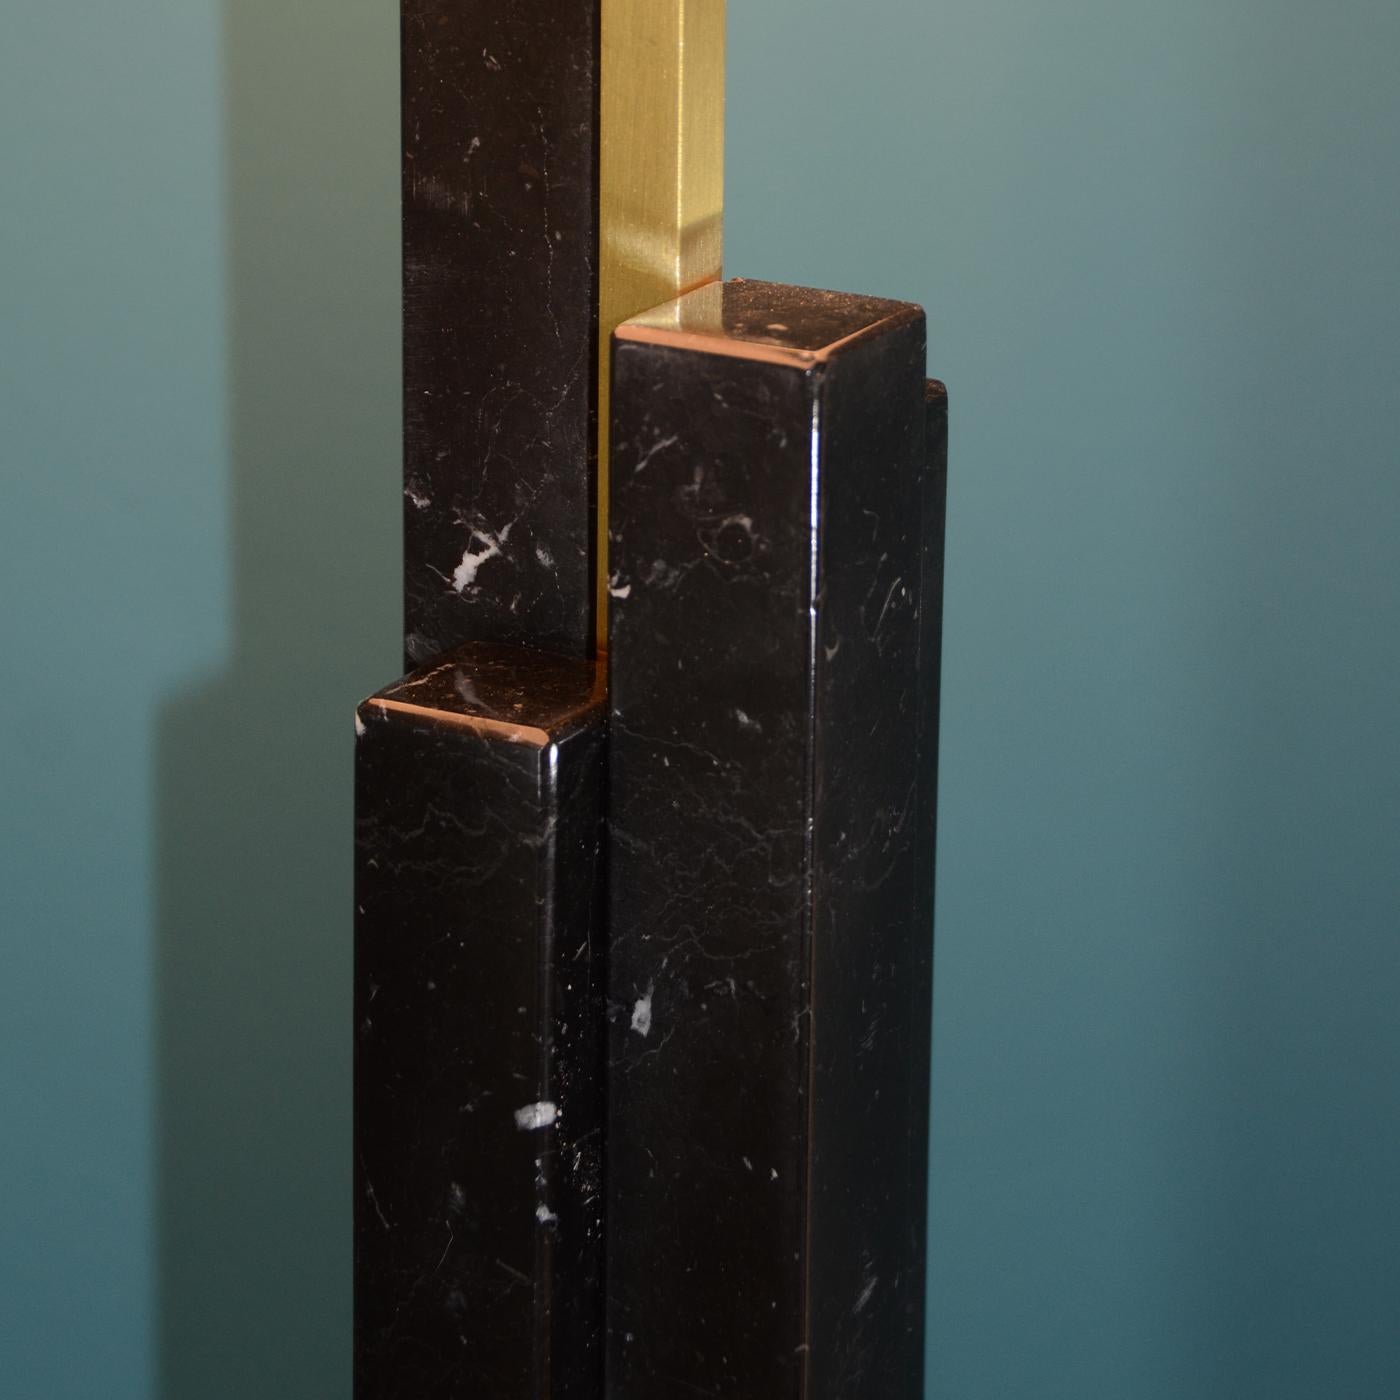 La collection Skyline, avec ses lamelles de marbre qui s'enroulent autour du corps de la lampe, donne une impression d'élan et de stricte linéarité. La présence de l'arc qui soutient l'abat-jour rappelle la saveur vintage des modèles des années 50.